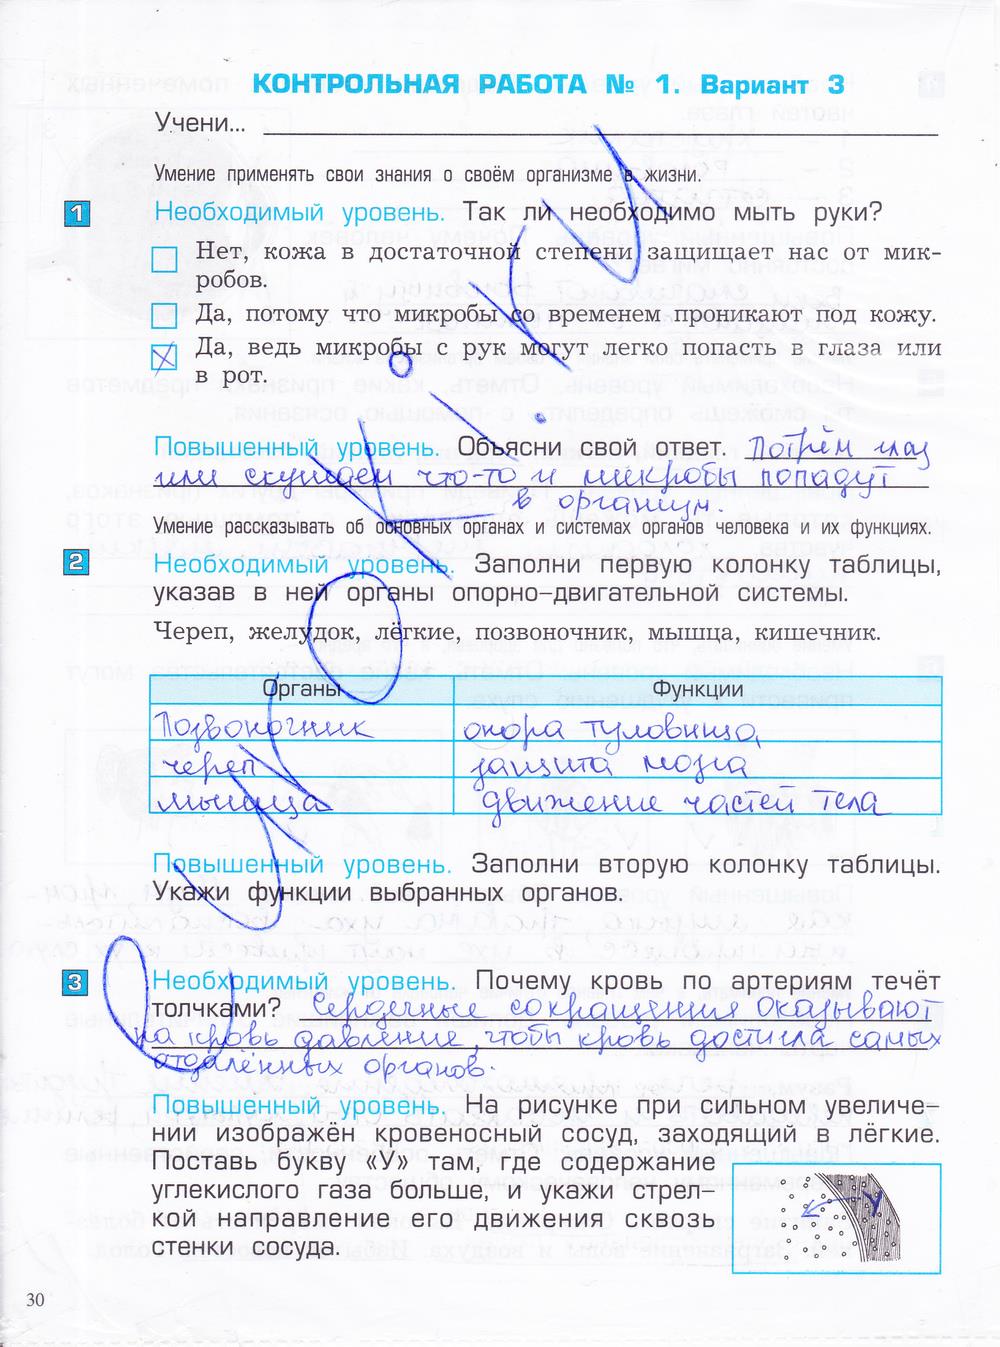 гдз 4 класс проверочные и контрольные работы часть 1 страница 30 окружающий мир Вахрушев, Бурский, Родыгина